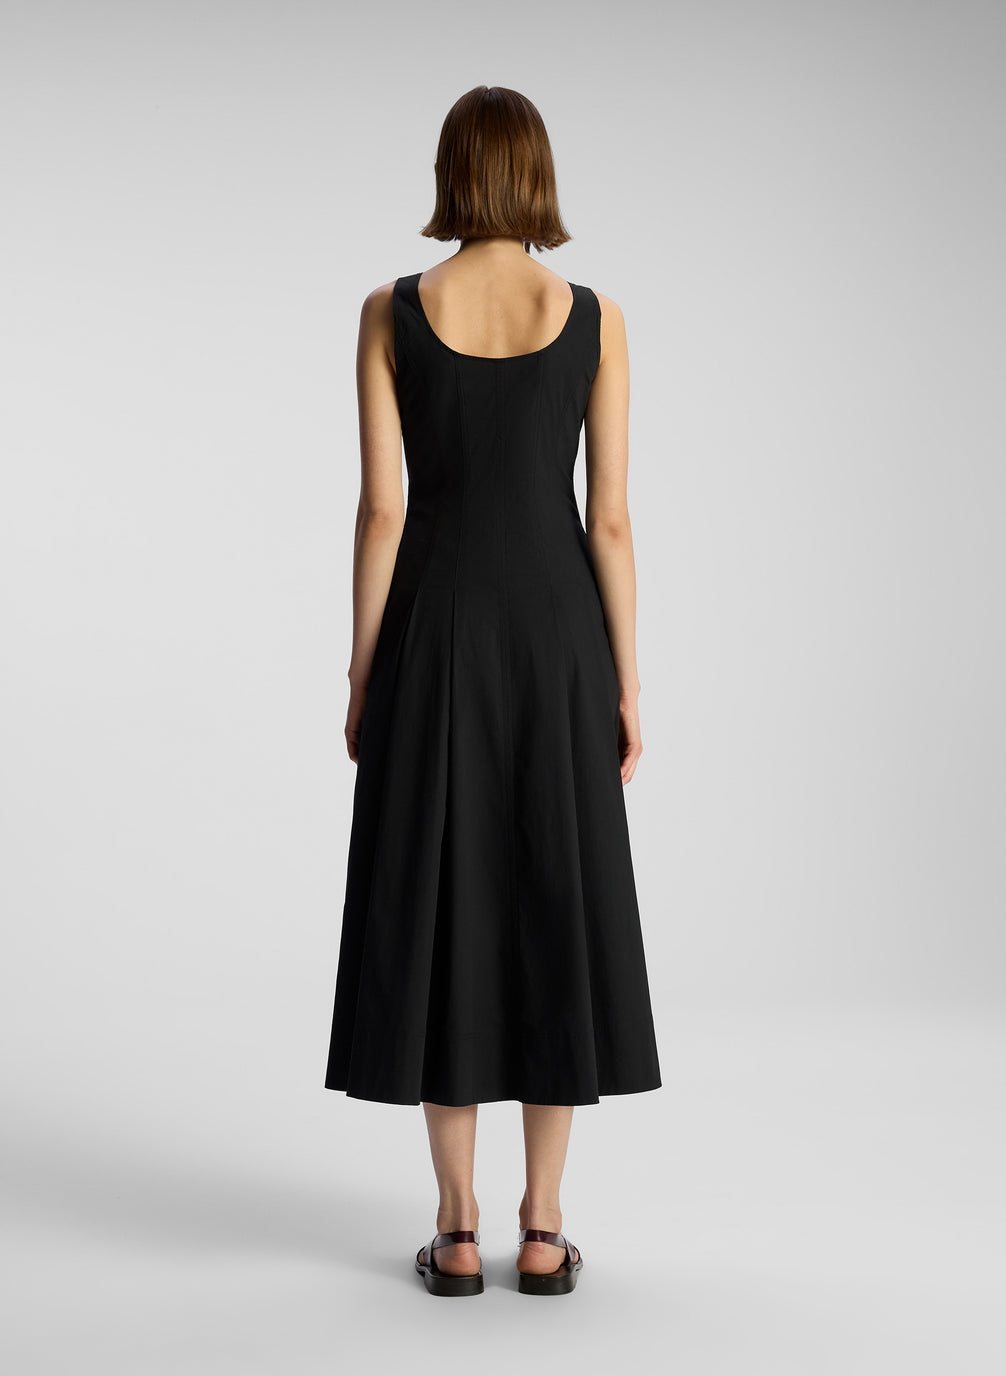 back  view of woman wearing black sleeveless midi dress